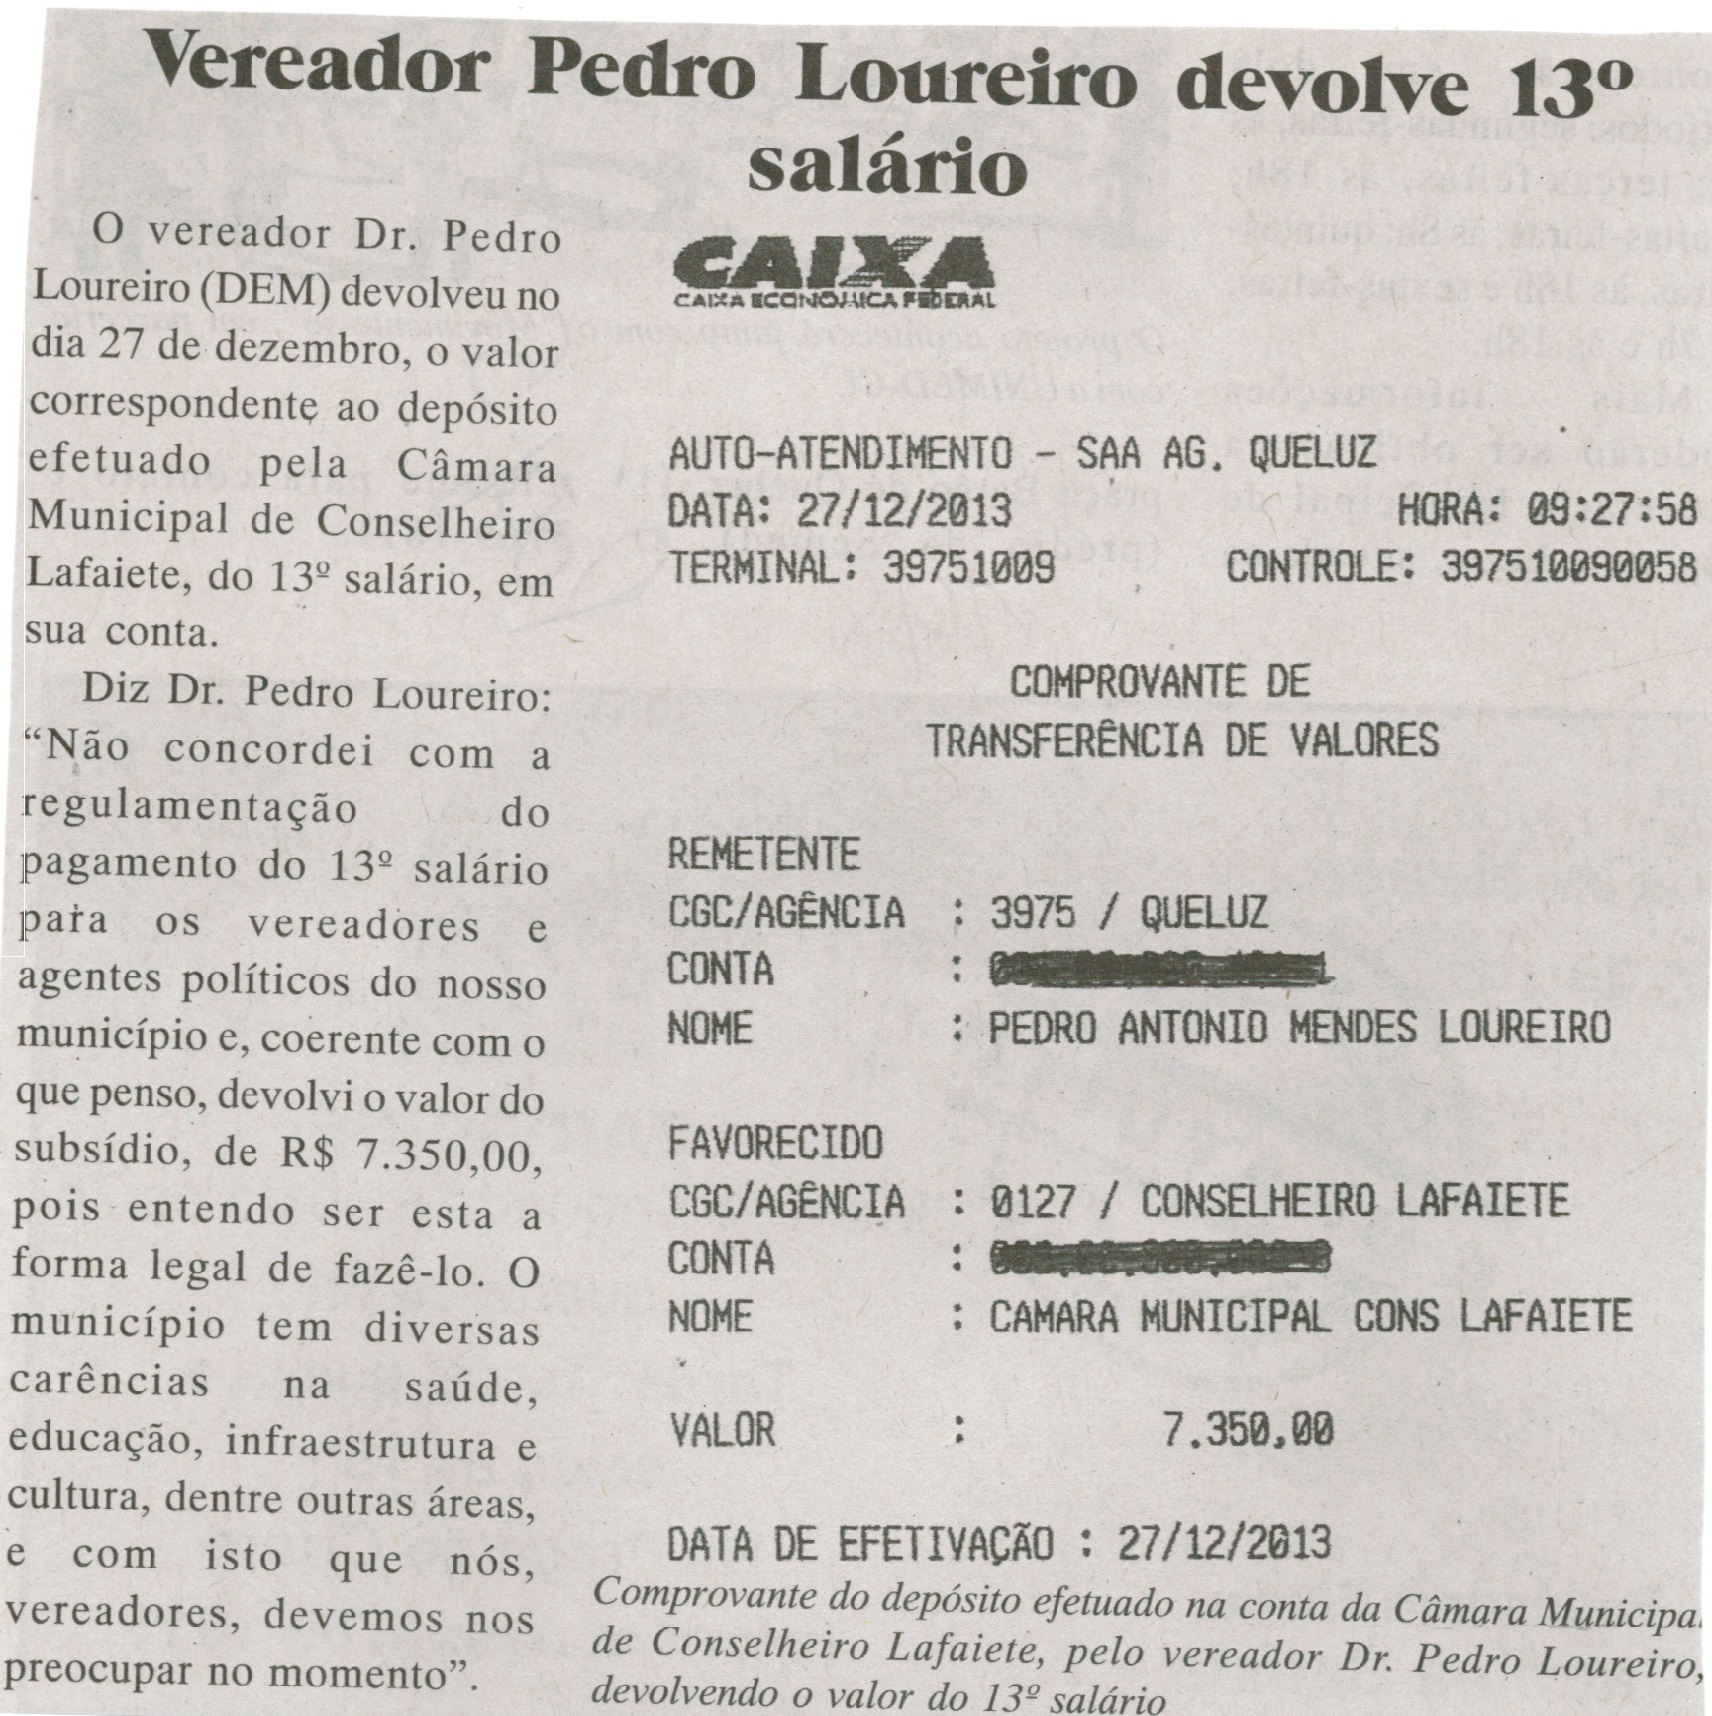 Vereador Pedro Loureiro devolve 13° salário. Jornal Baruc, Congonhas, 15 jan. 2014, p. 5.